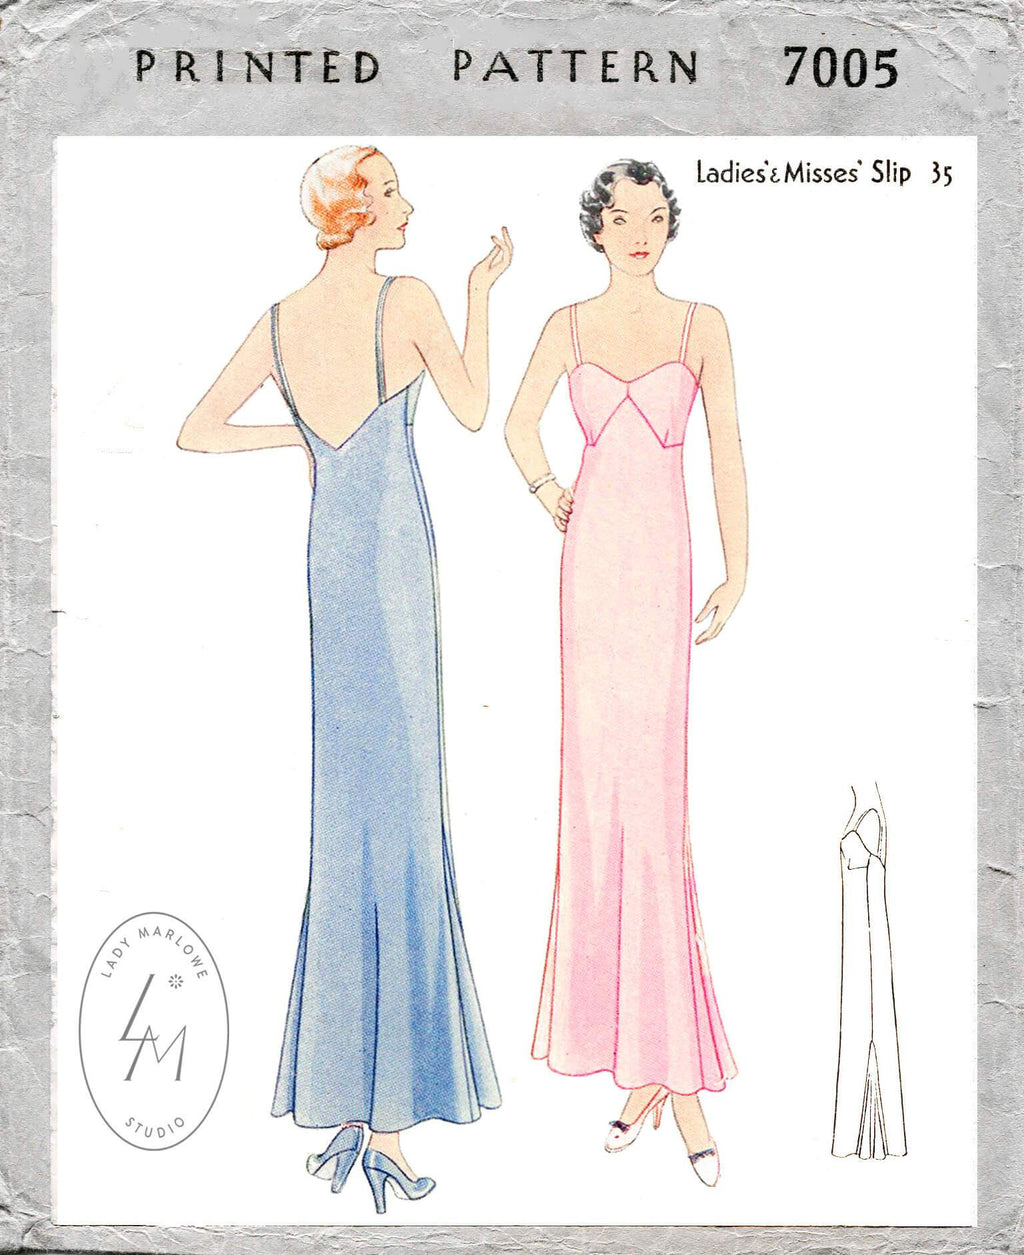 McCall 7005 1930s 1932 slip dress v back neckline vintage lingerie sewing pattern reproduction